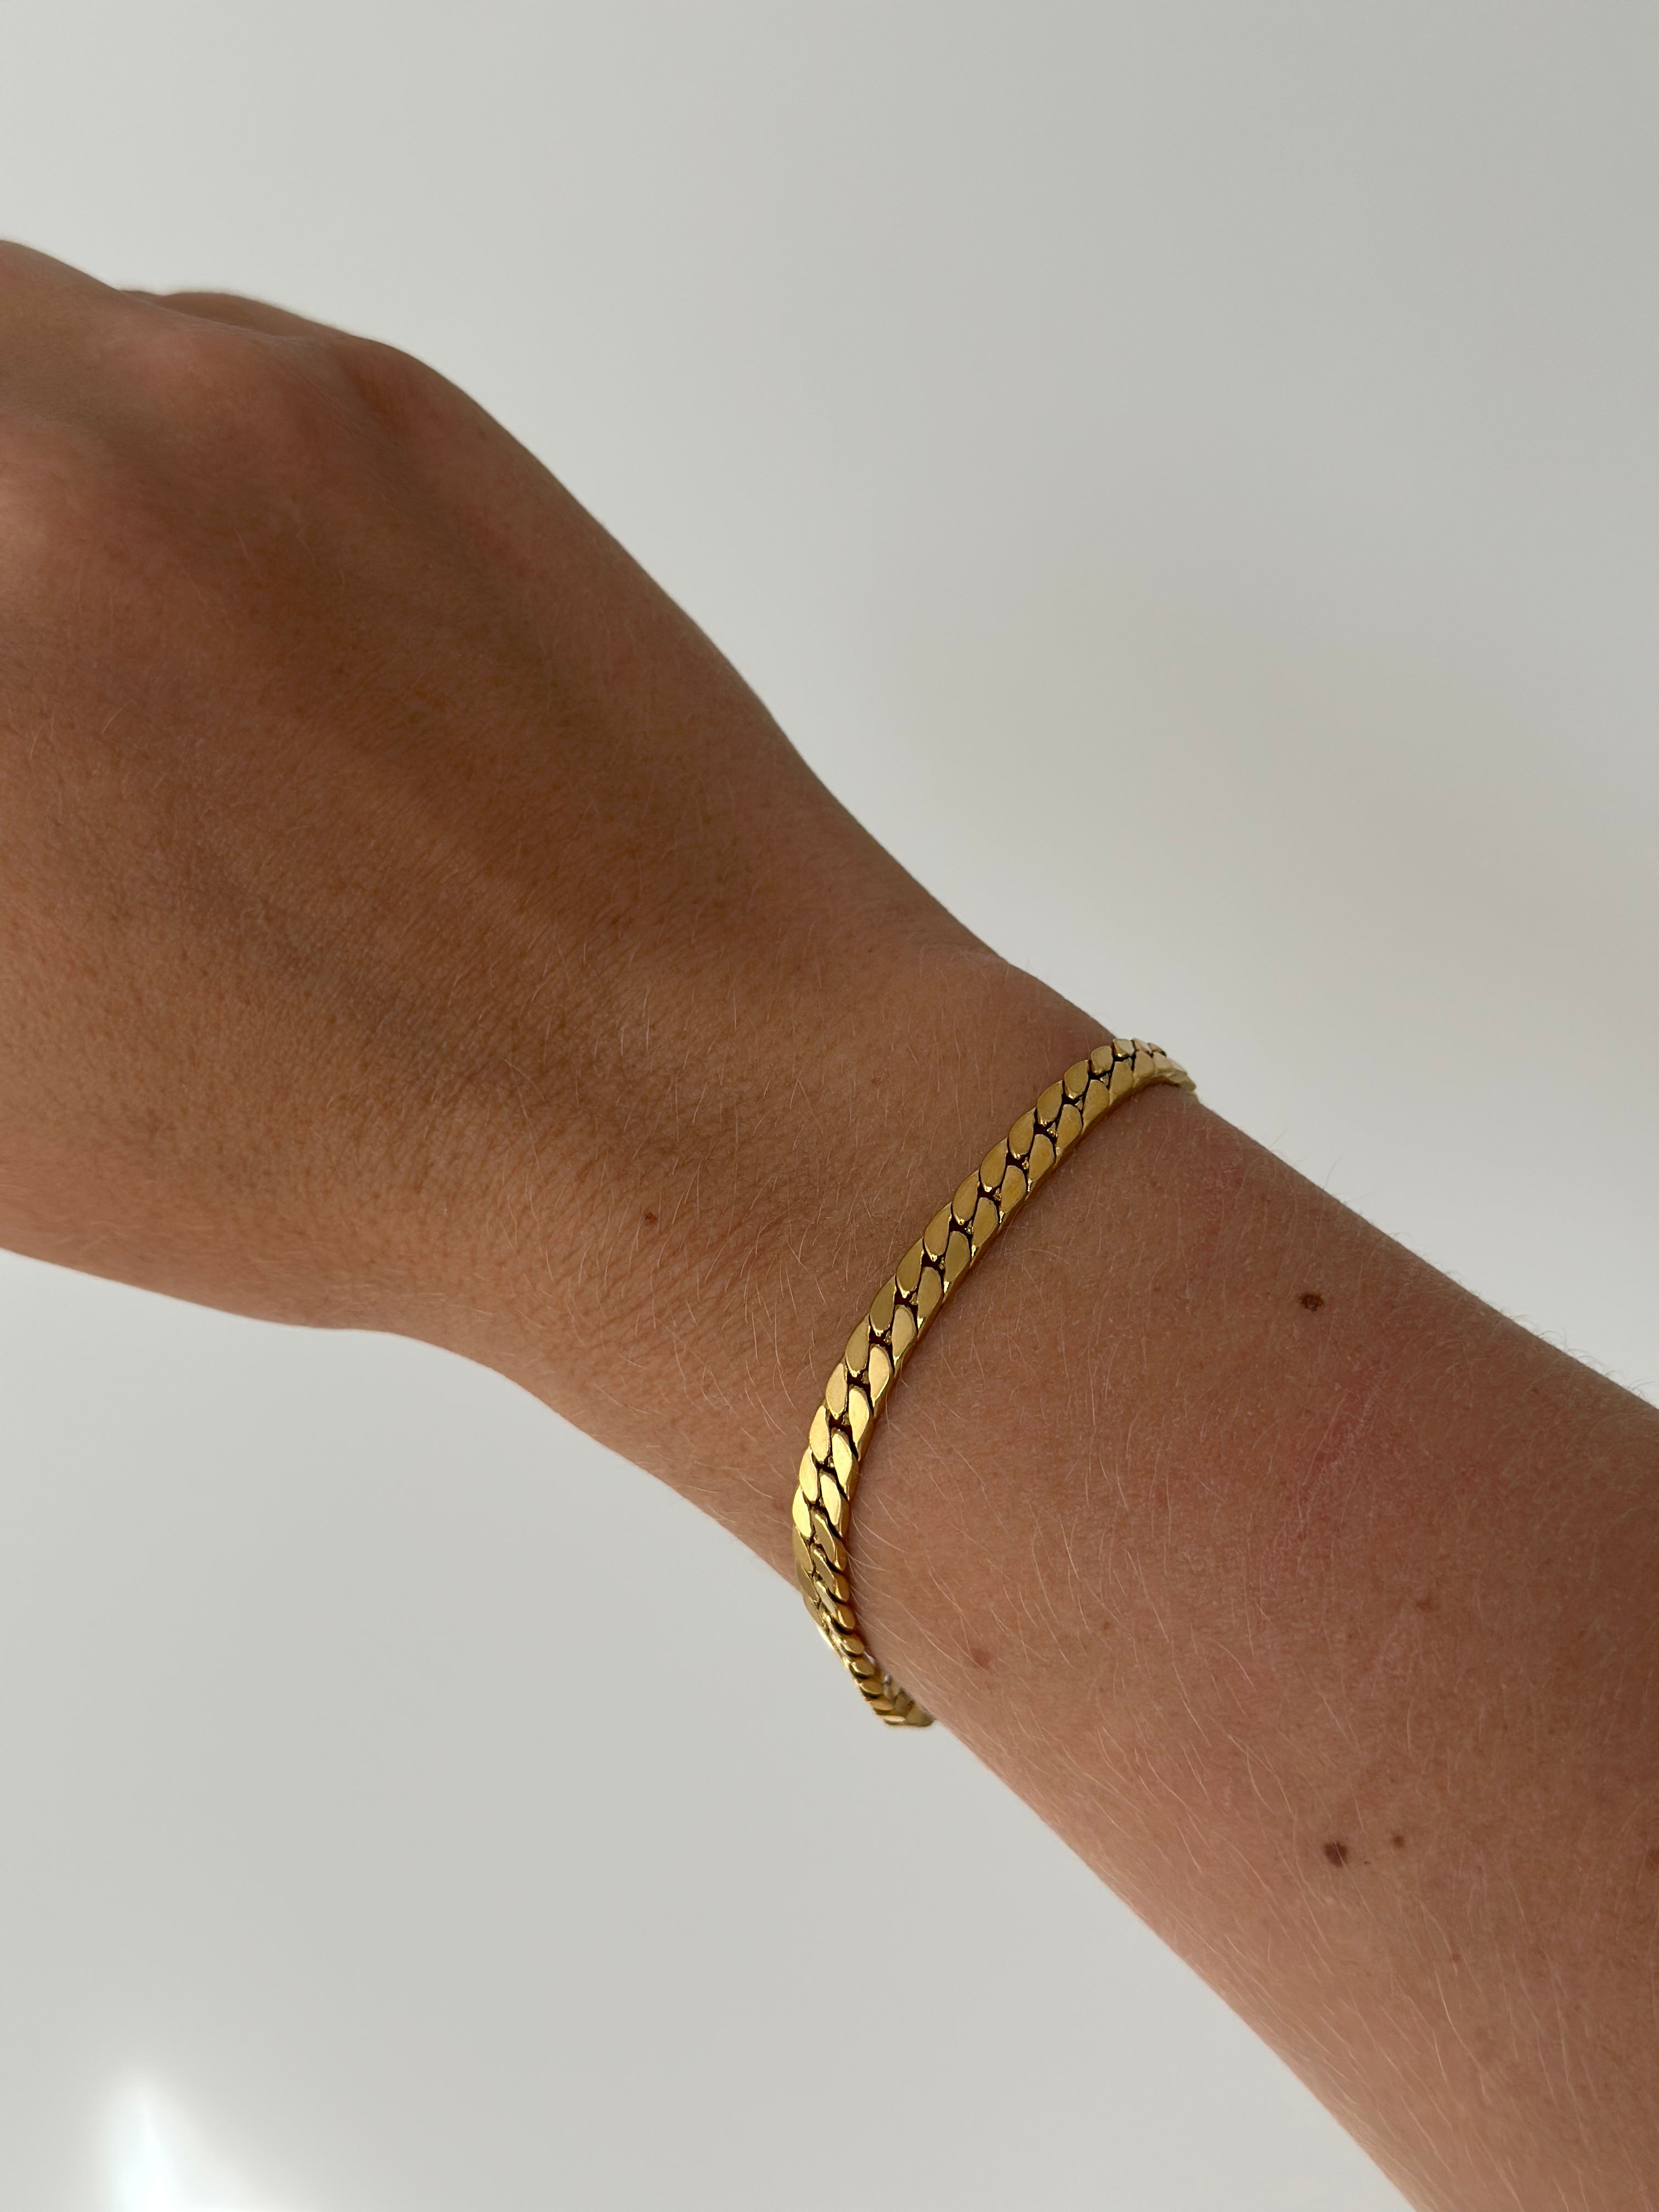 GLORIA // Le bracelet